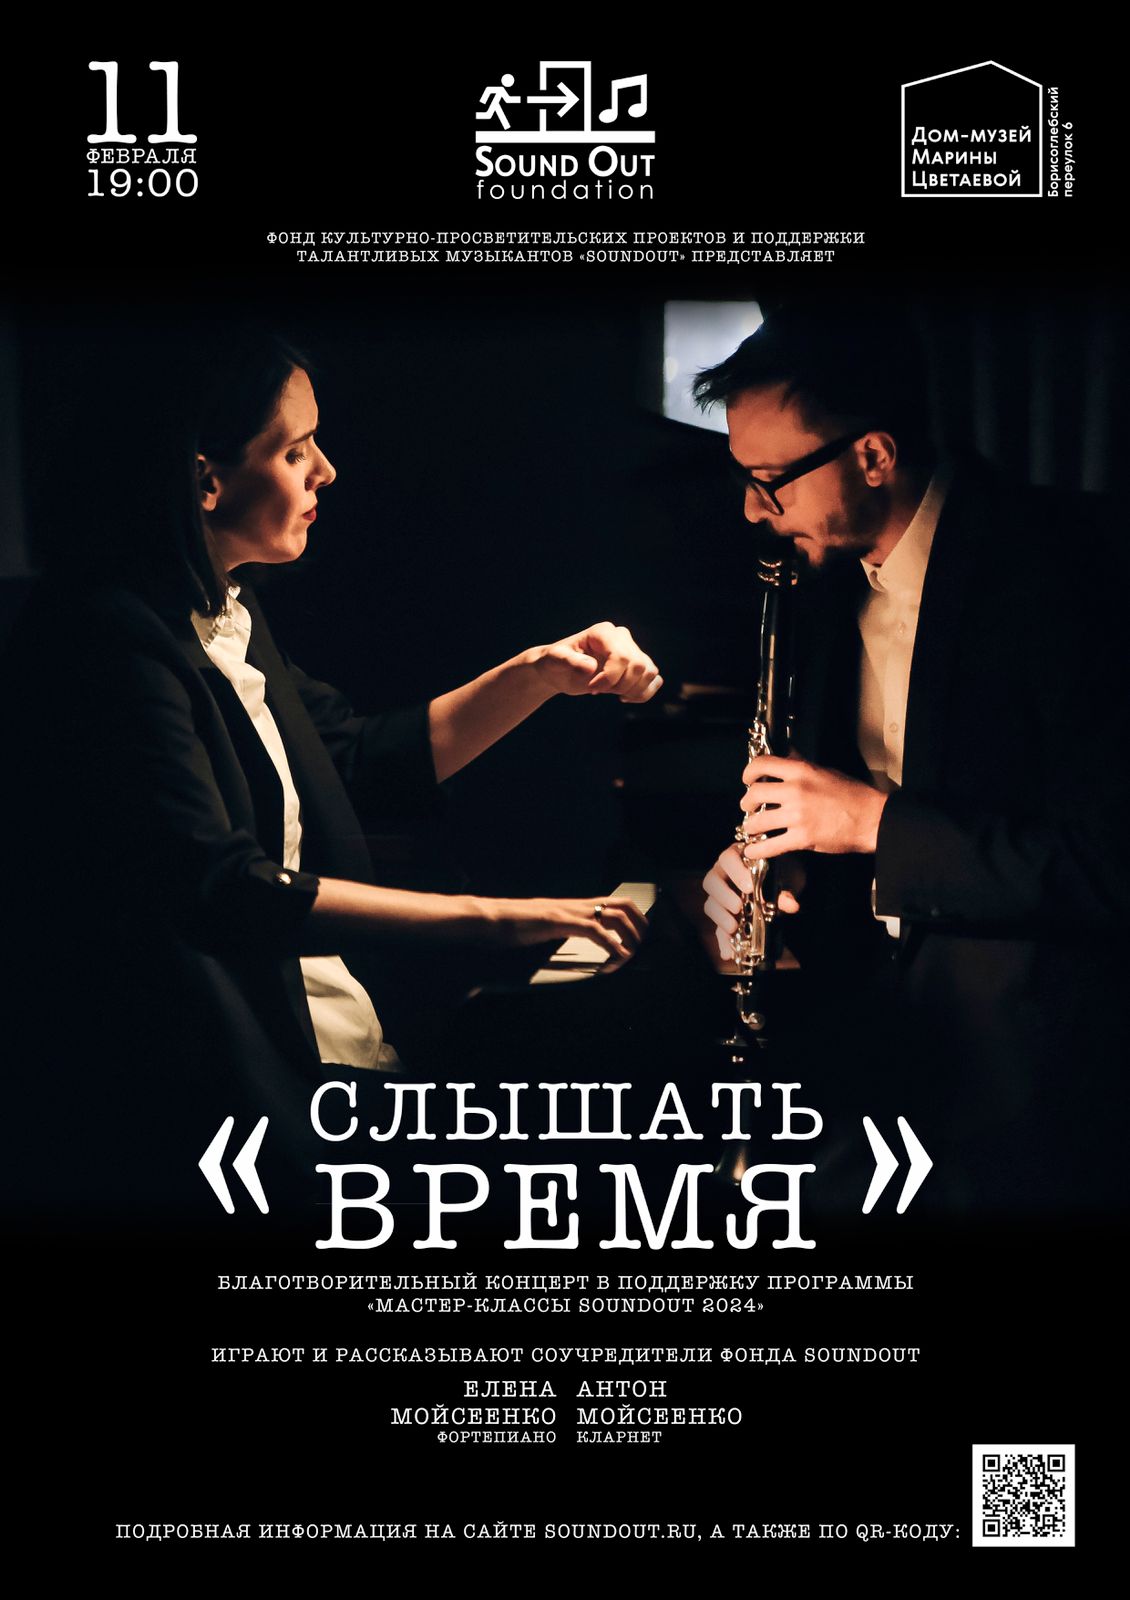 Иллюстрация: Благотворительный концерт Антона и Елены Мойсеенко «Слышать время»